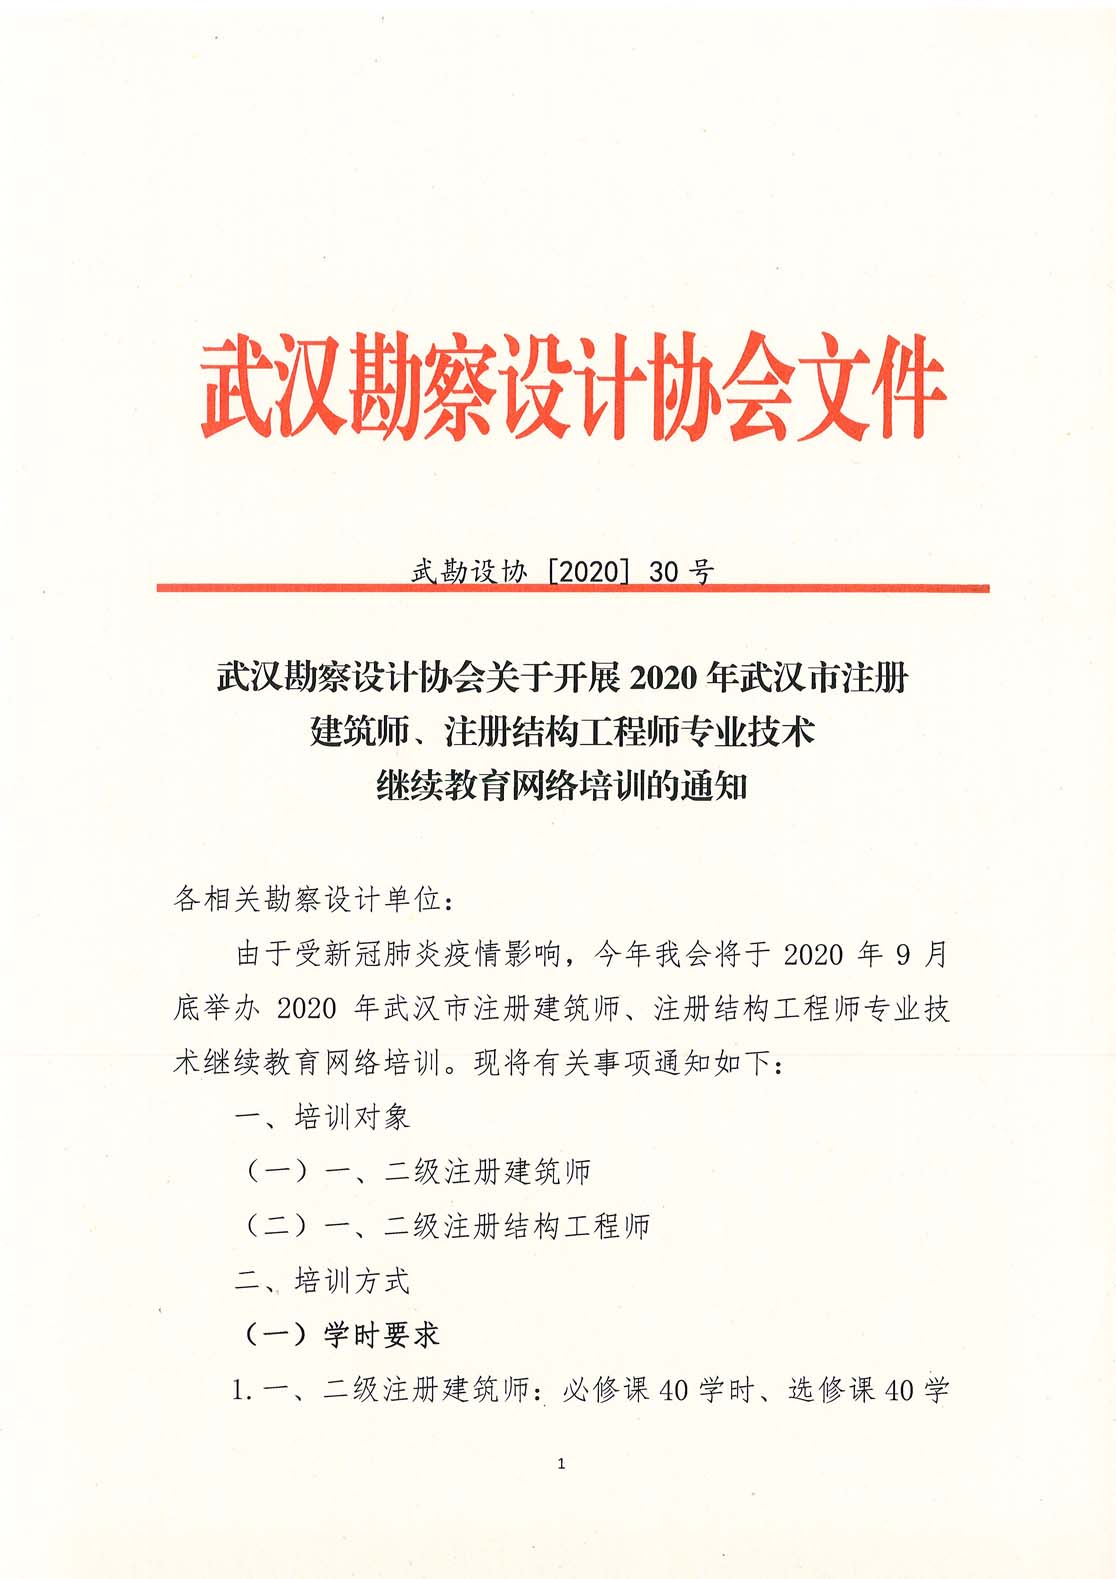 武汉勘察设计协会关于开展2020年武汉市注册建筑师、注册结构工程师专业技术继续教育网络培训的通知